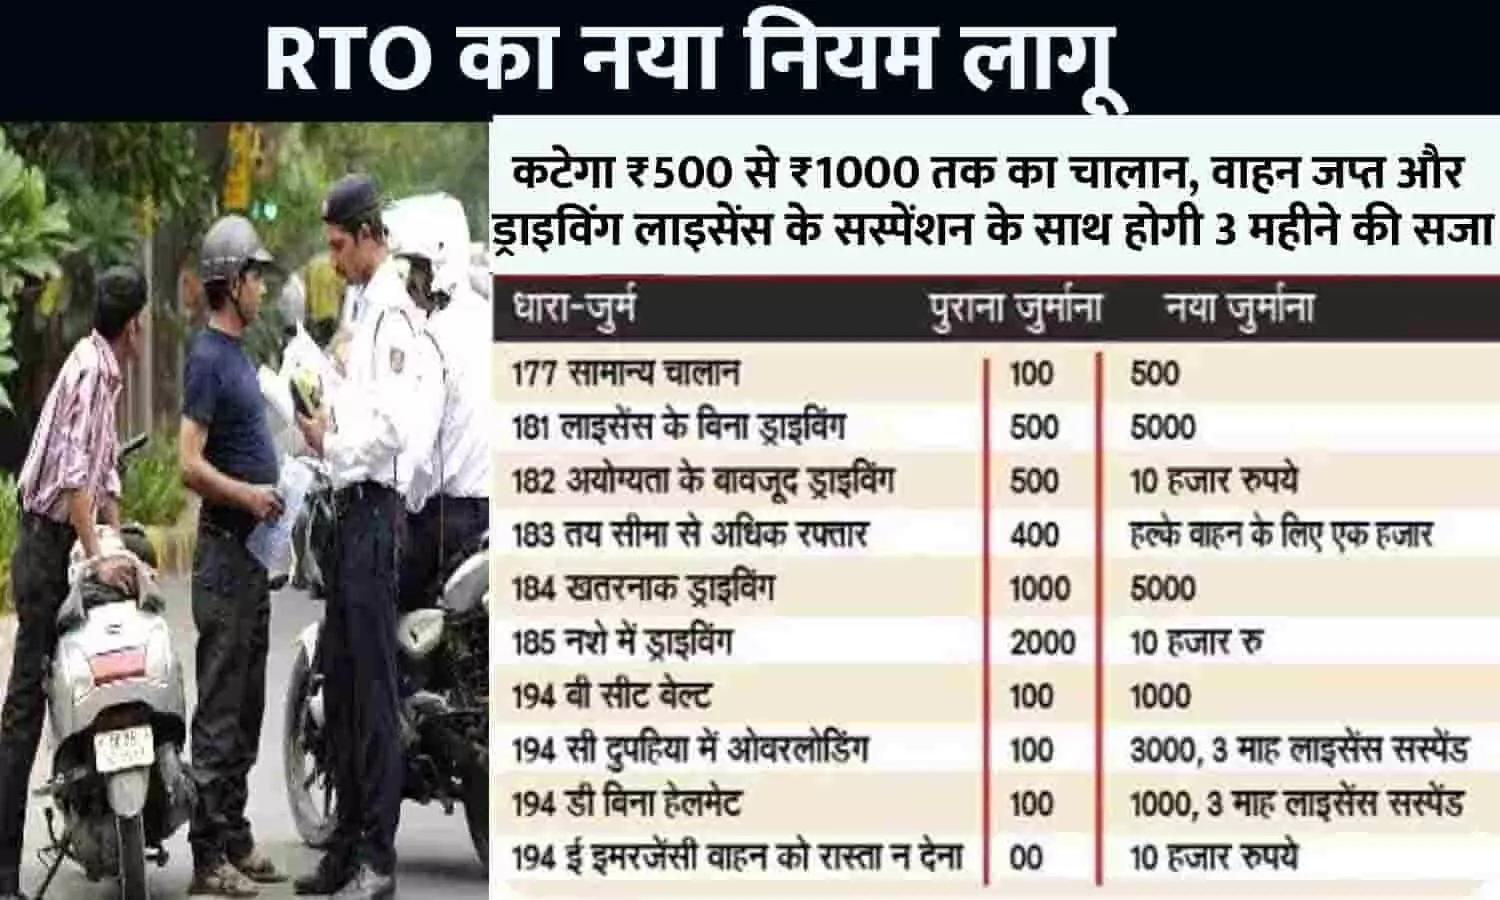 RTO Traffic Challan Big Alert 2023: आरटीओ का नया नियम लागू, कटेगा ₹500 से ₹1000 तक का चालान, वाहन जप्त और ड्राइविंग लाइसेंस के सस्पेंशन के साथ होगी 3 महीने की सजा